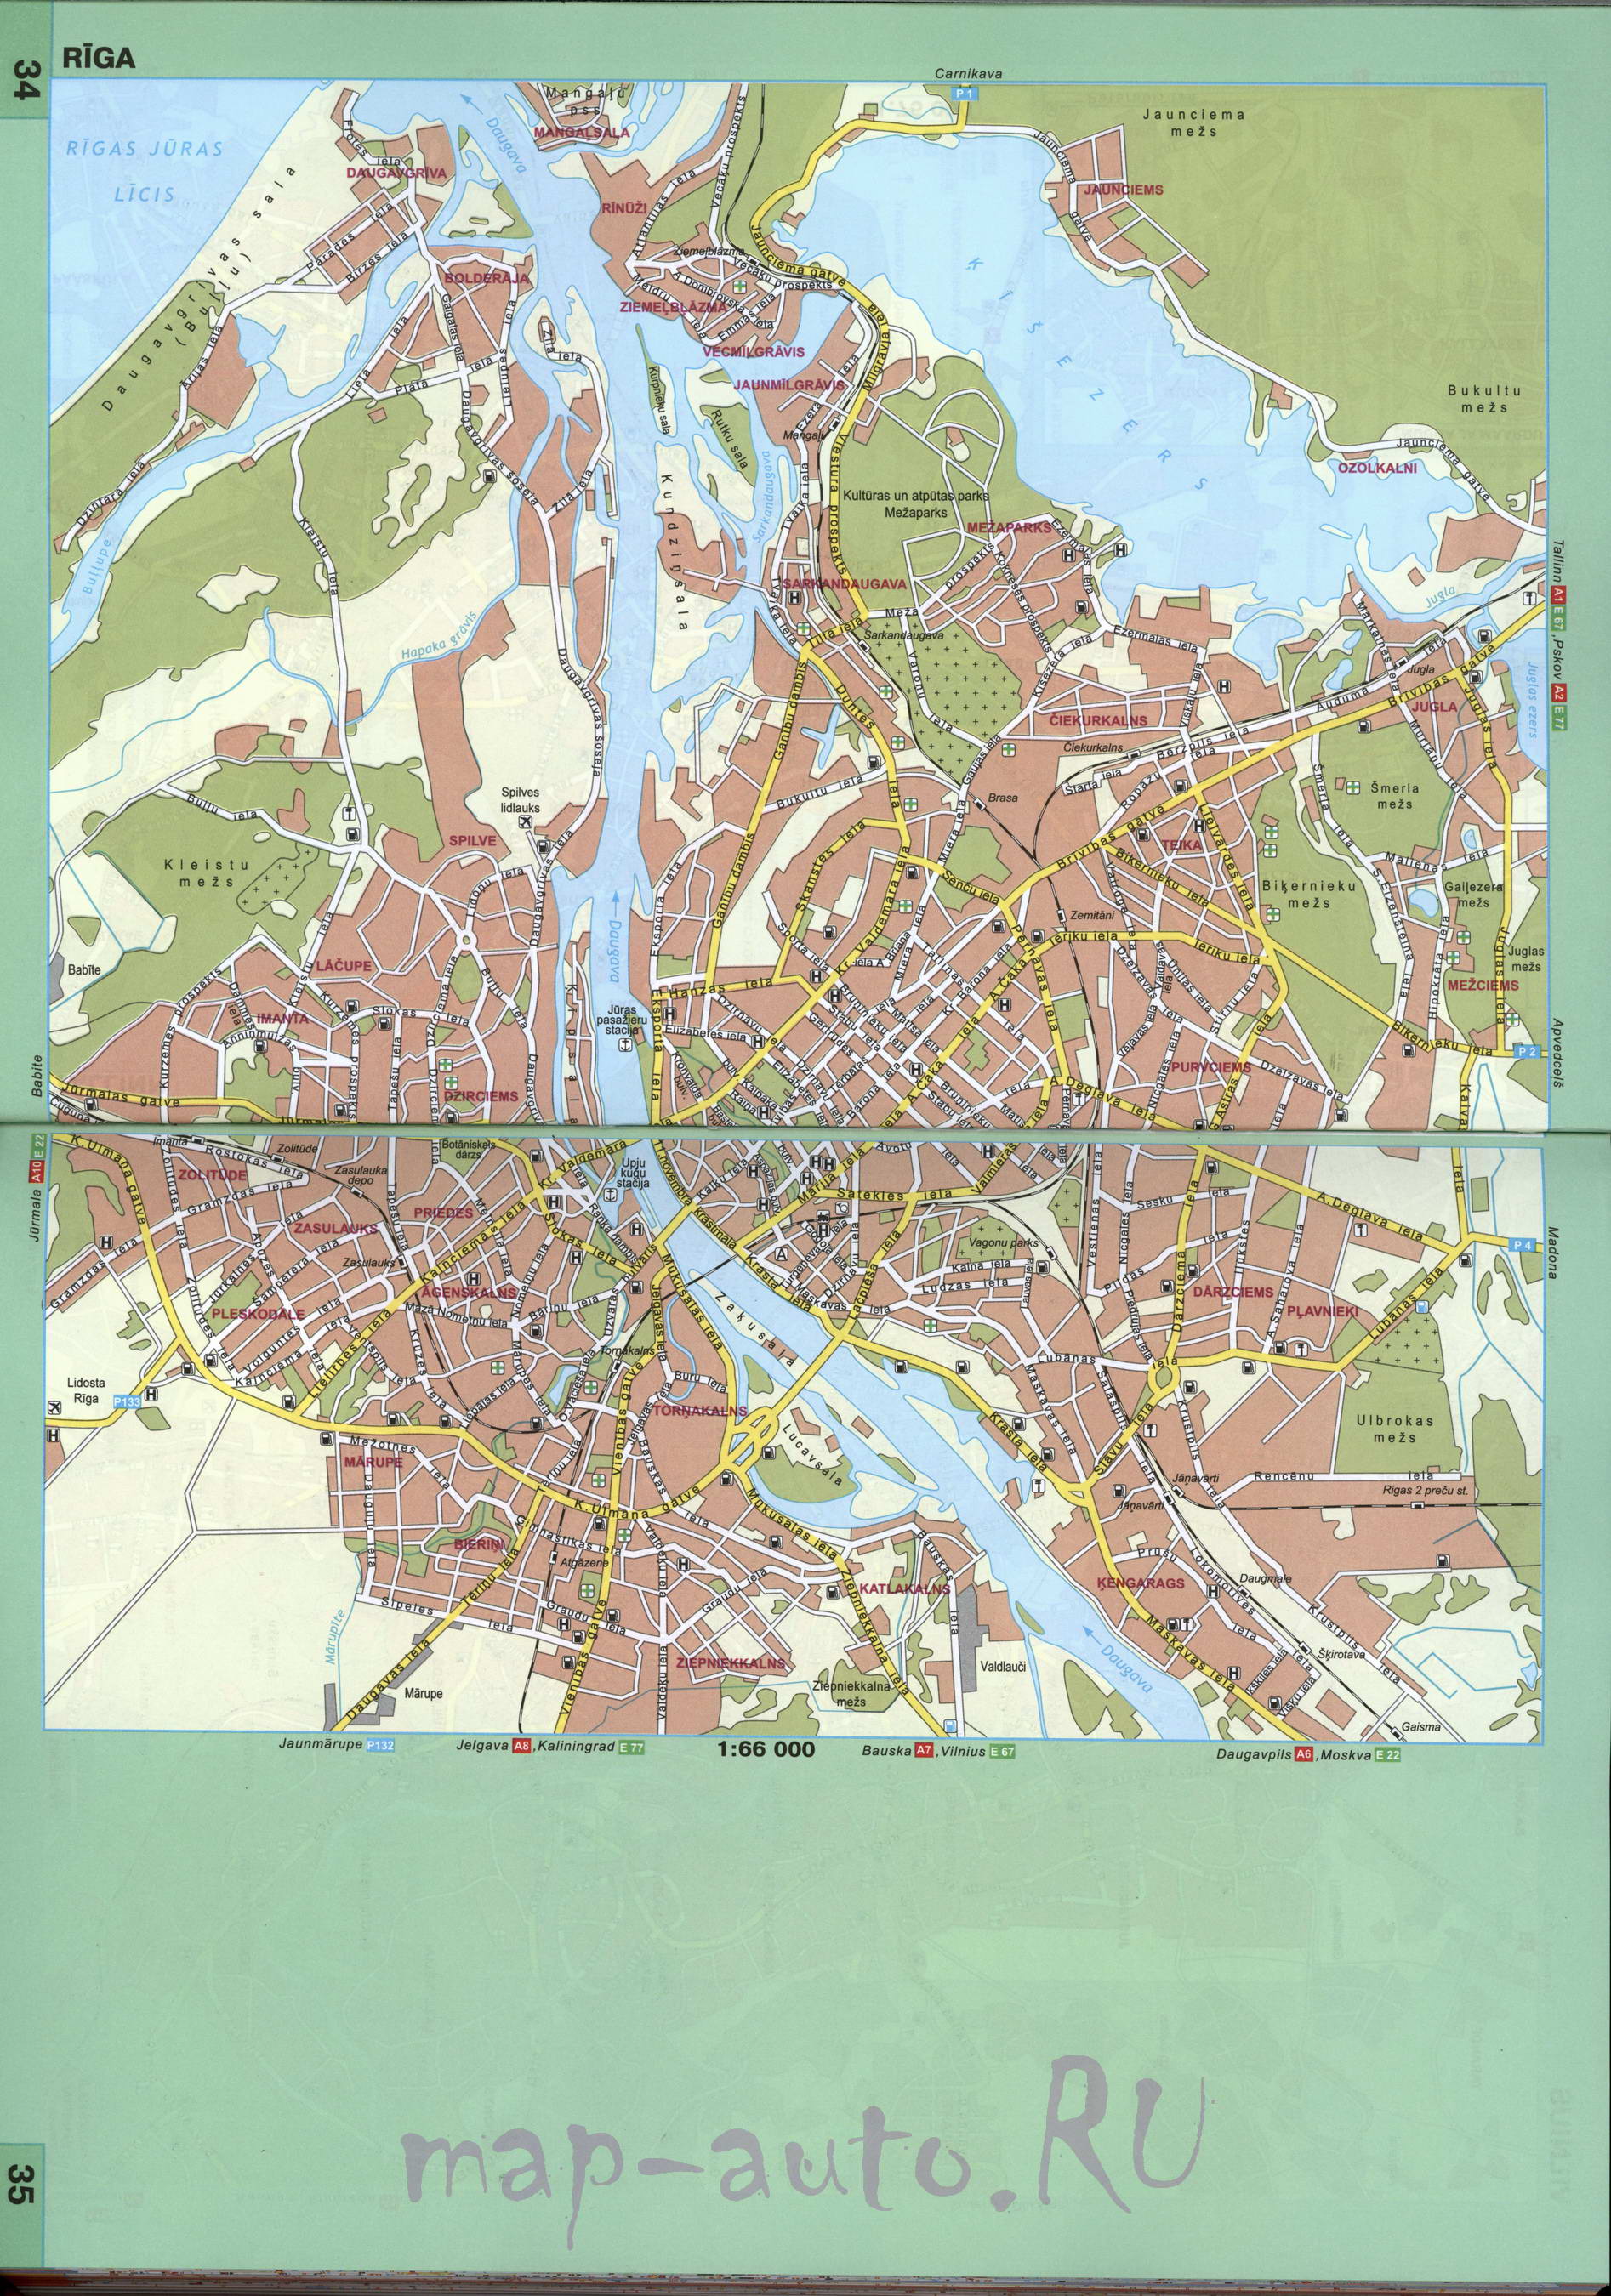 Латвия, карта Риги. Подробная карта Риги. Большая четкая карта Риги с названиями улиц, A0 - 